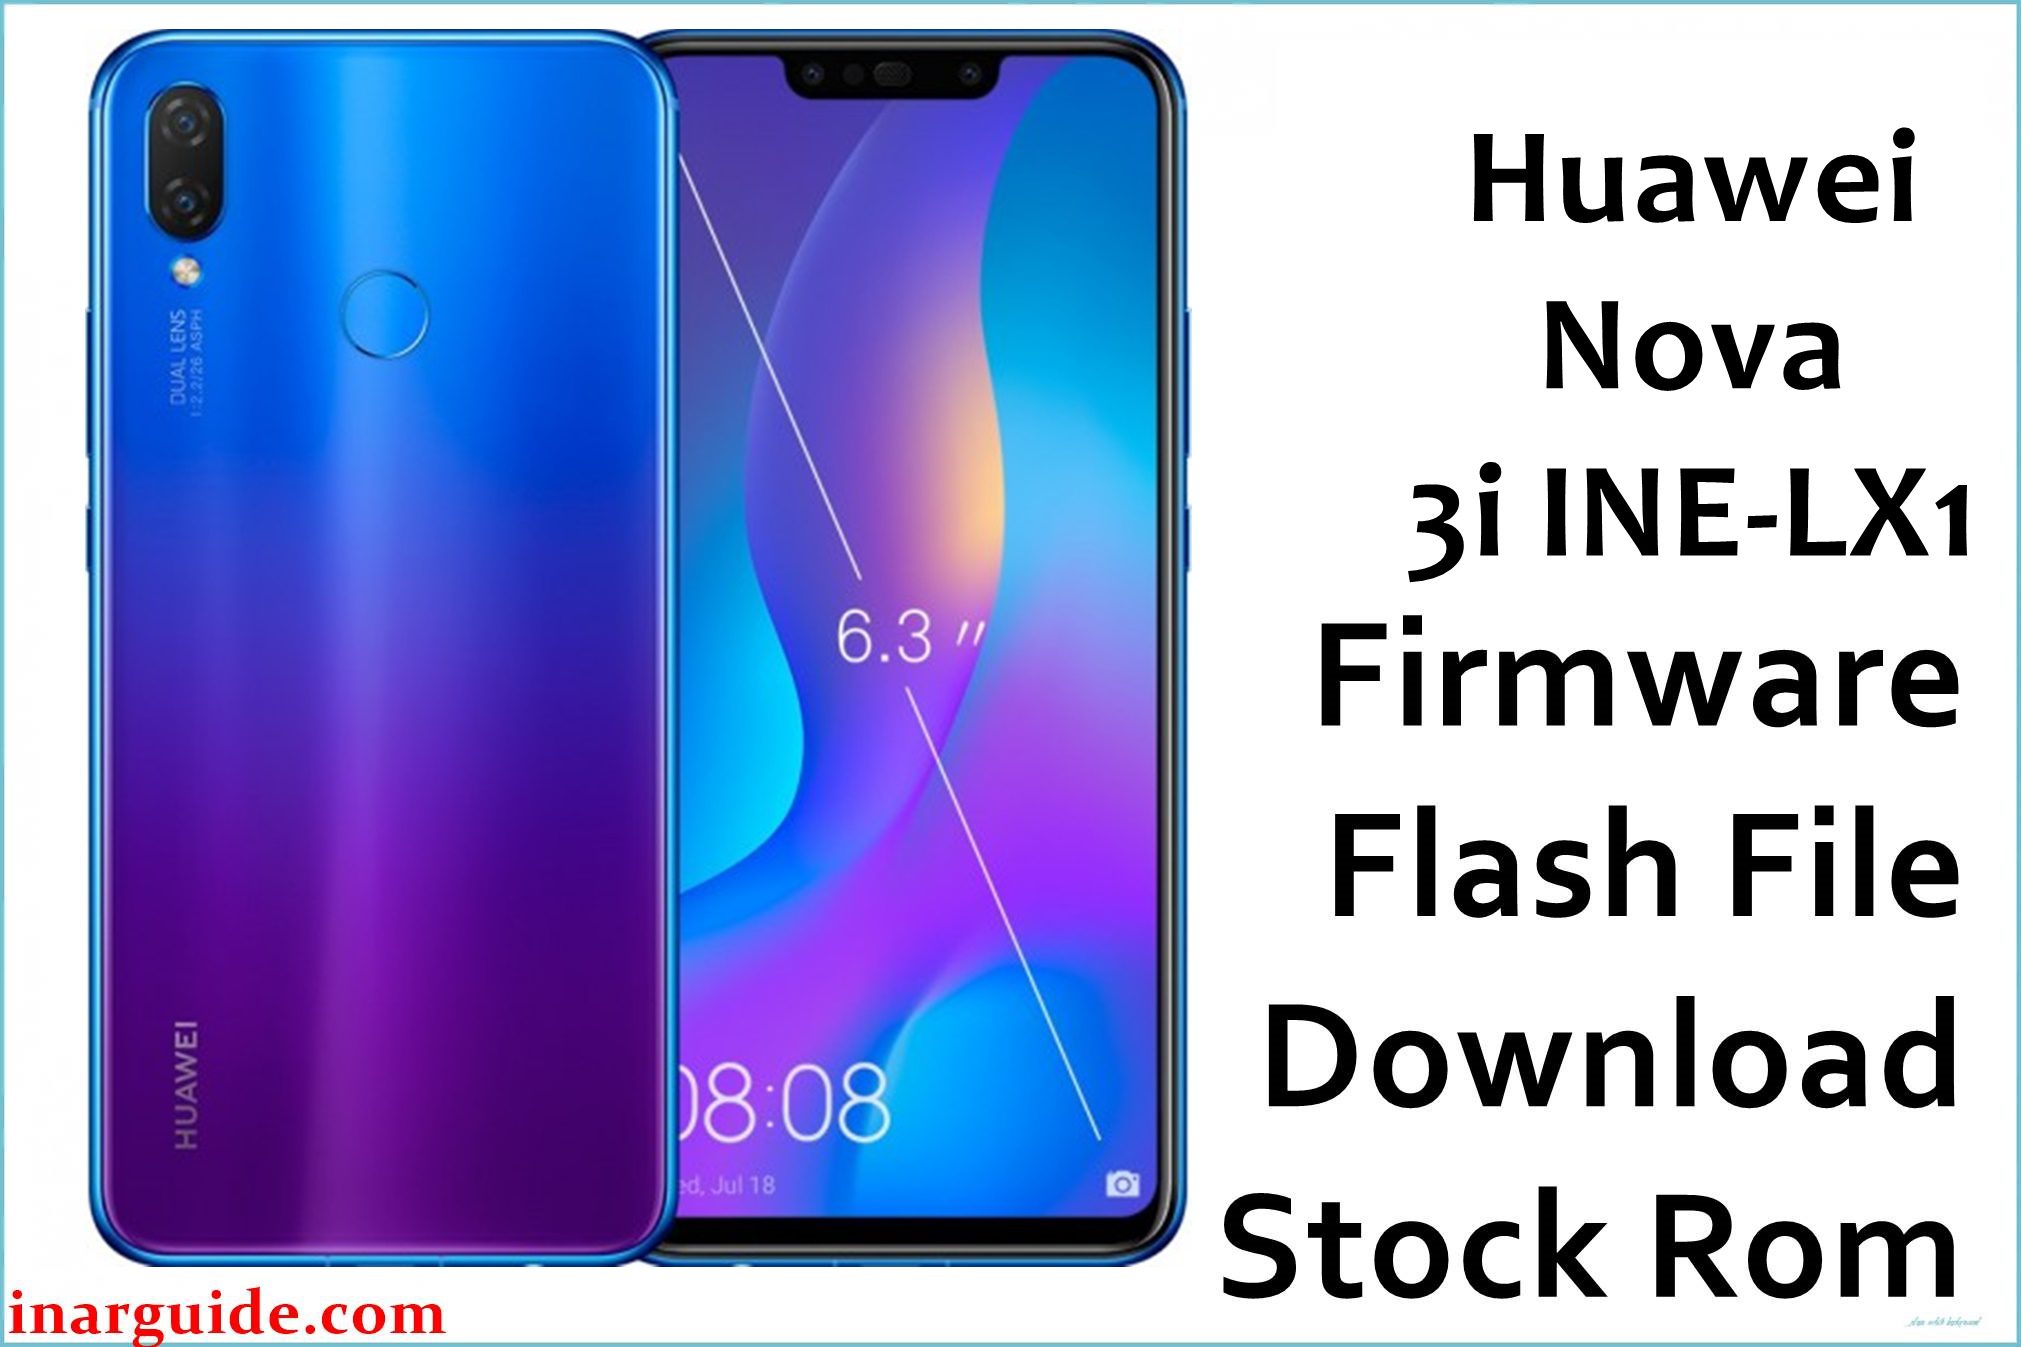 Huawei Nova 3i INE LX1